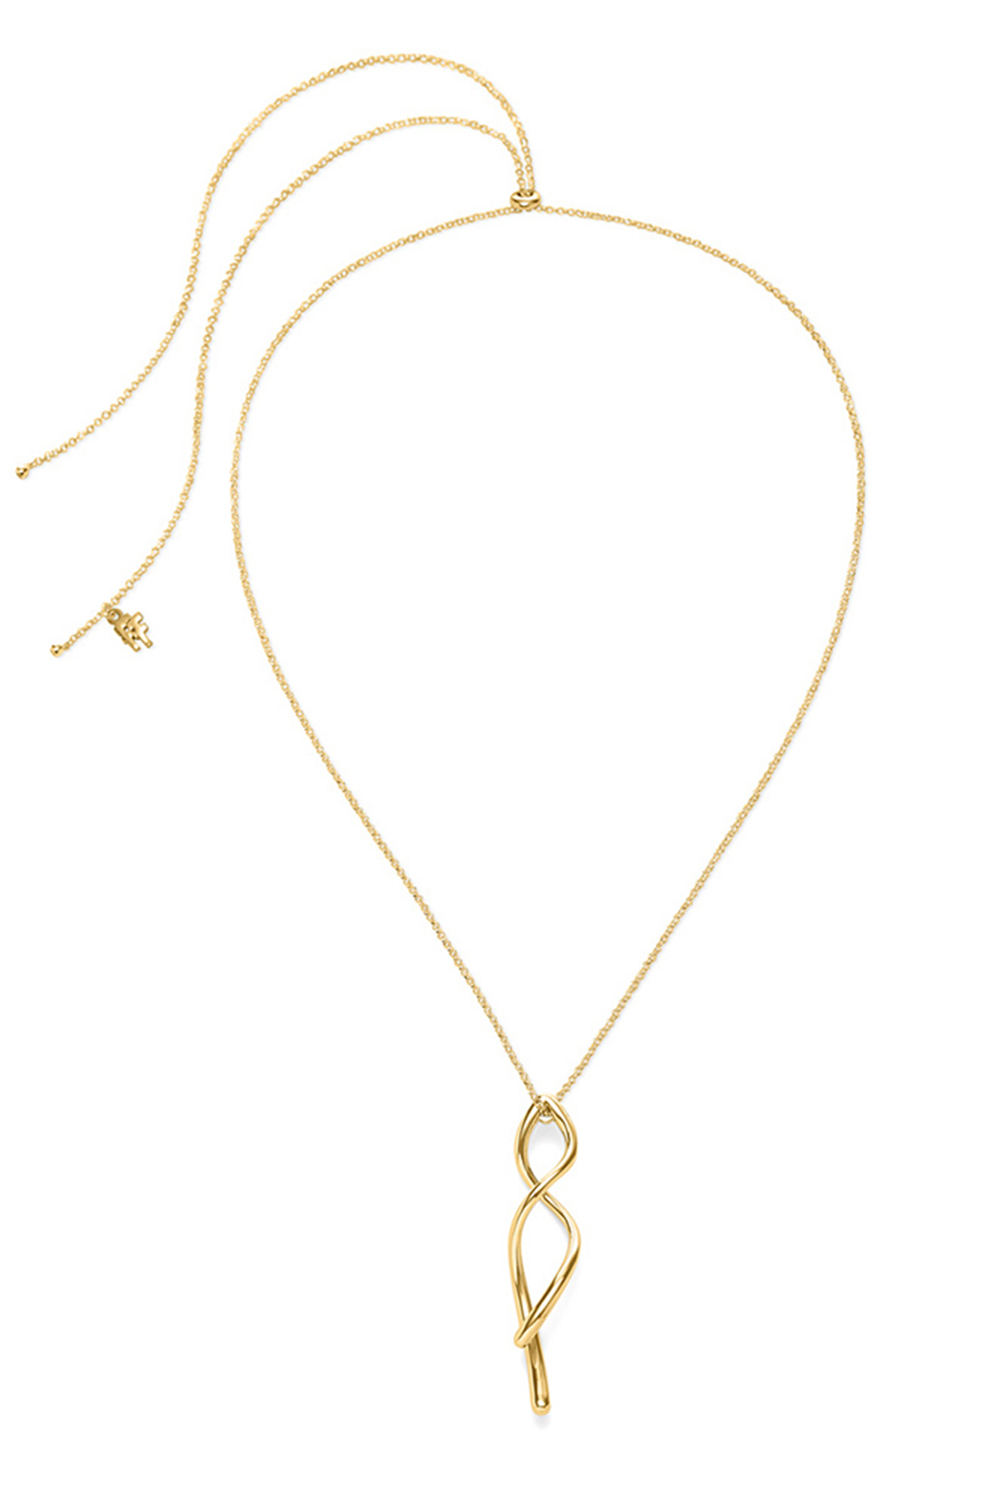 Γυναικεία/Αξεσουάρ/Κοσμήματα/Κολιέ FOLLI FOLLIE - Γυναικείo μακρύ κολιέ από ορείχαλκο FOLLI FOLLIE FLUIDITY χρυσό